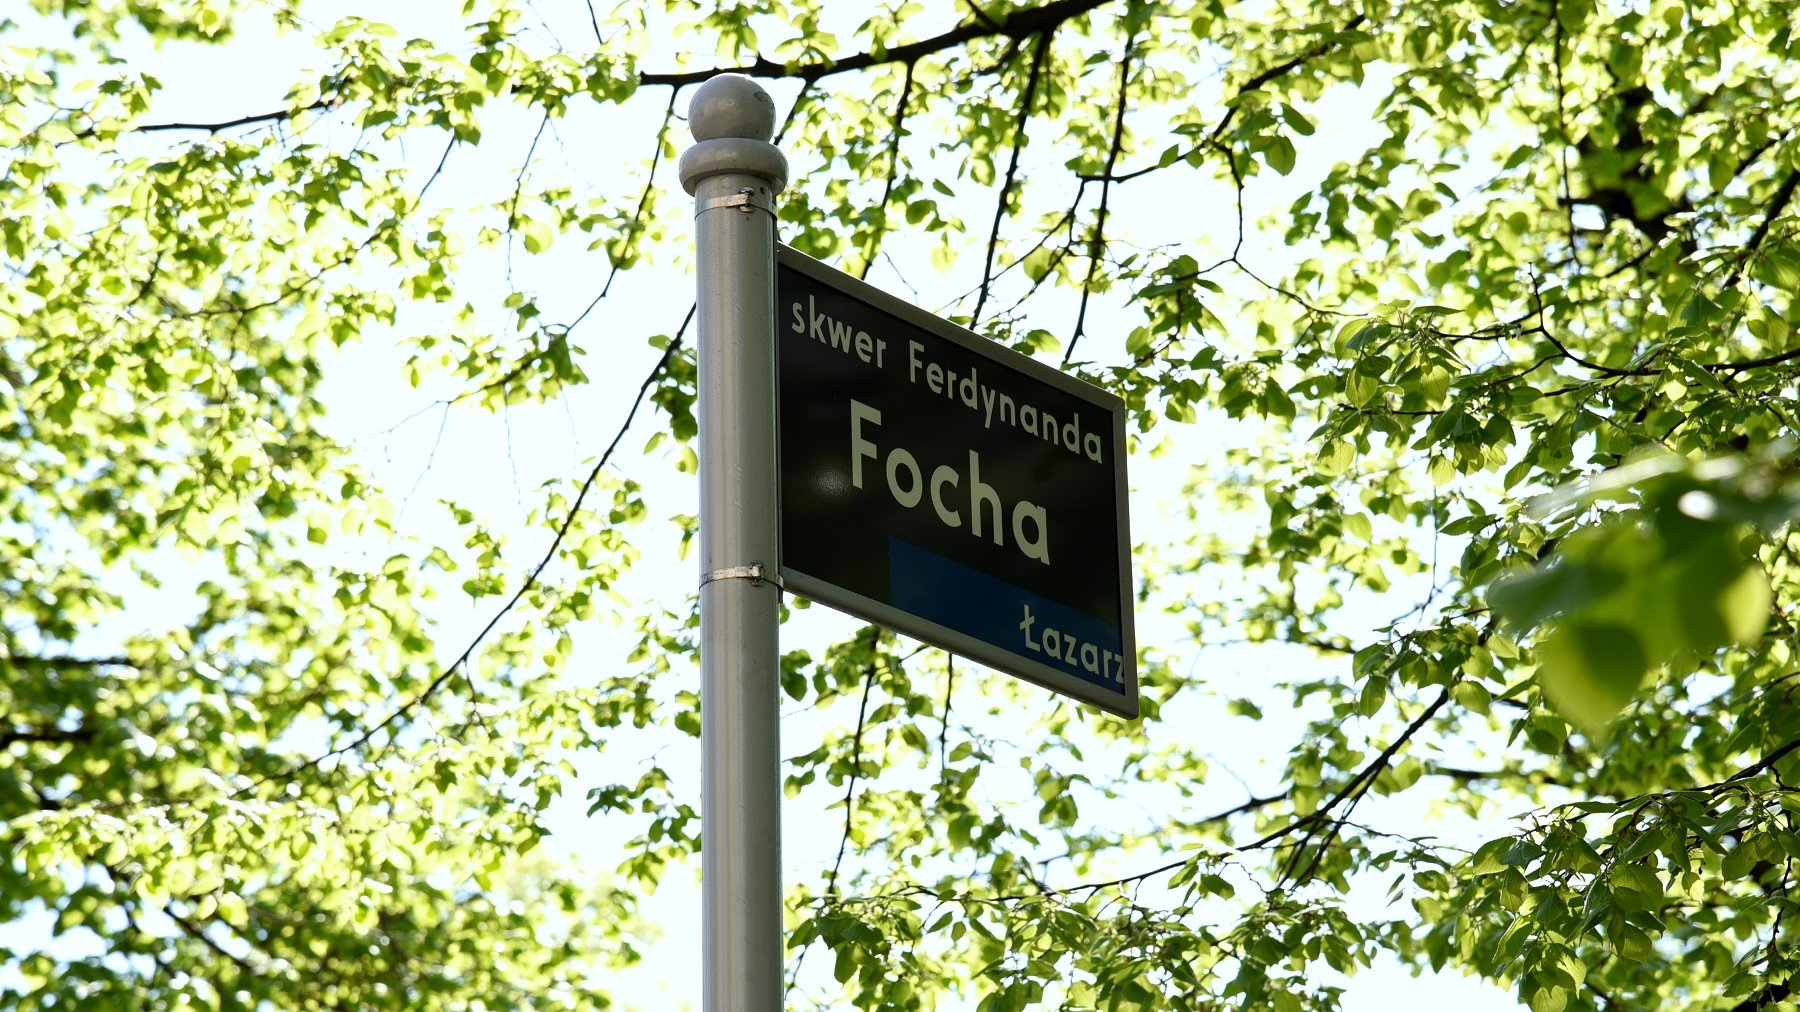 Skwer u zbiegu ulic Matejki i Wyspiańskiego zyskał nowego patrona - został nim marszałek Ferdynand Foch